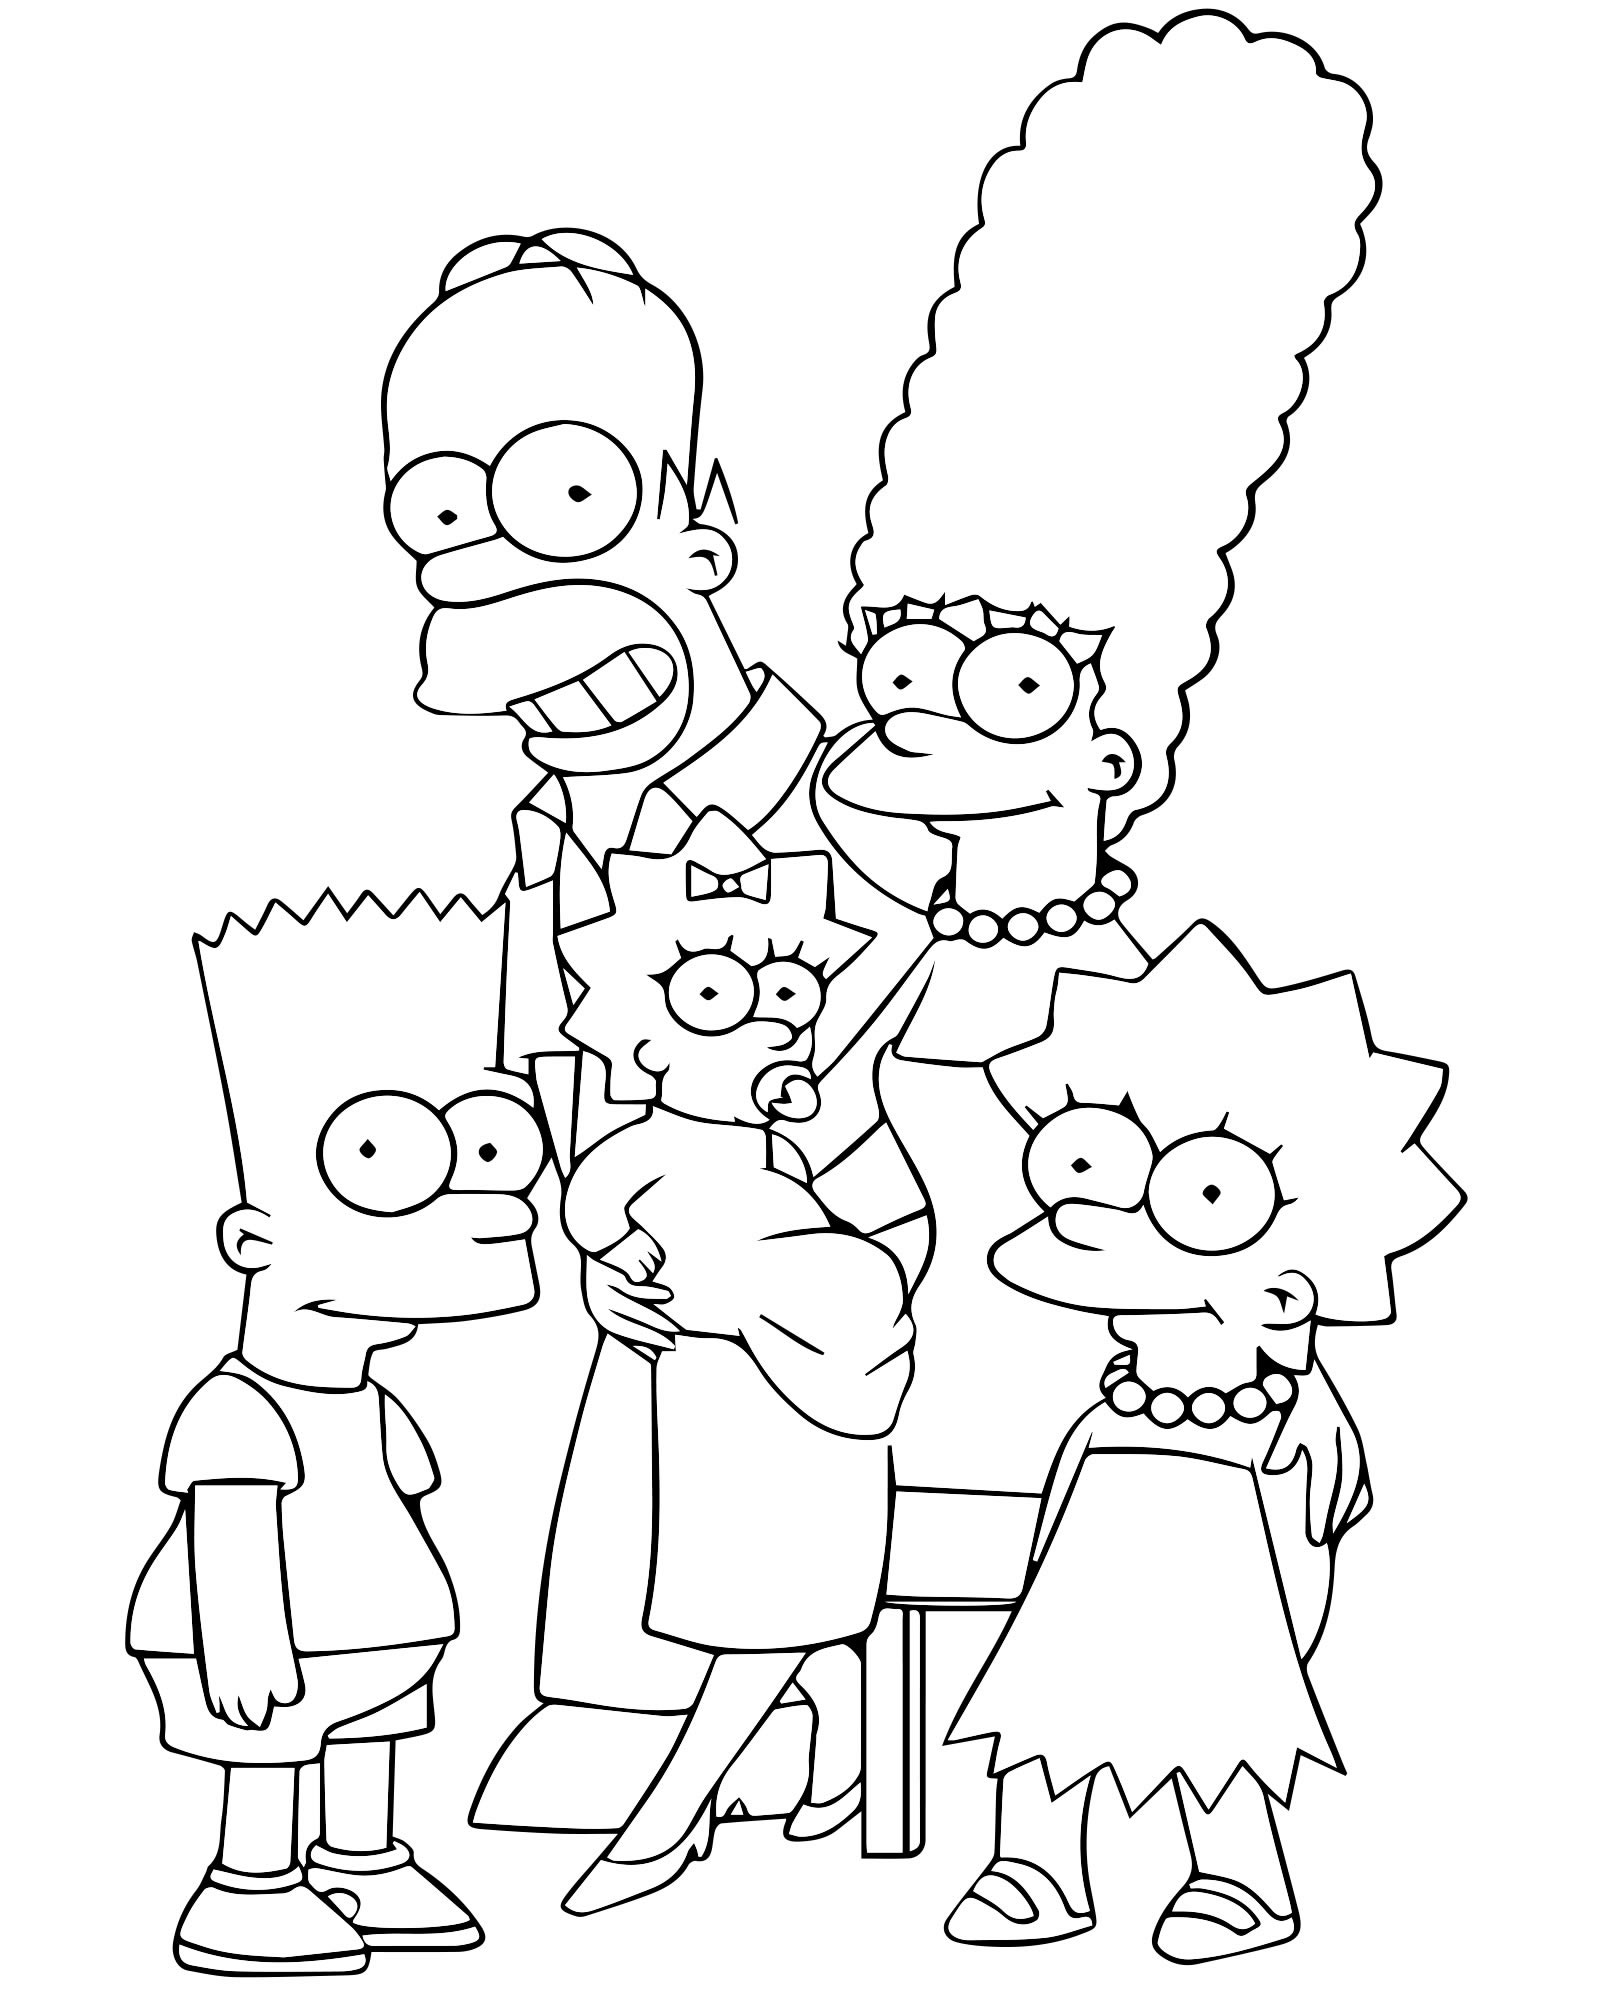 Раскраска Веселый Барт Симпсон распечатать - Симпсоны